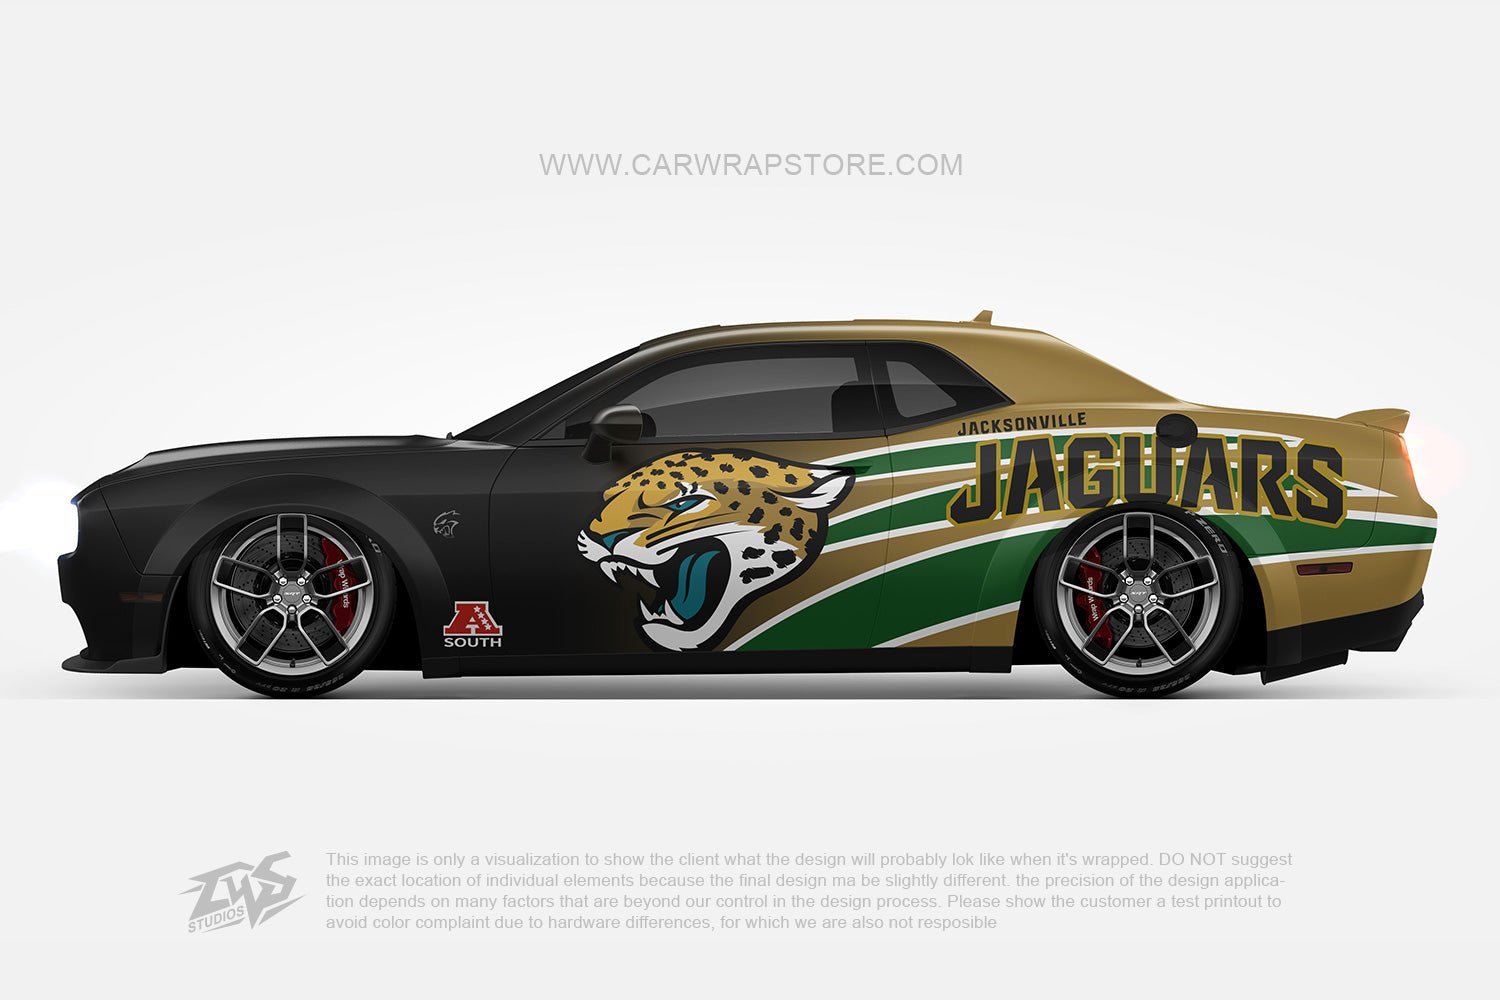 Jacksonville Jaguars【NFL-12】 - Car Wrap Store